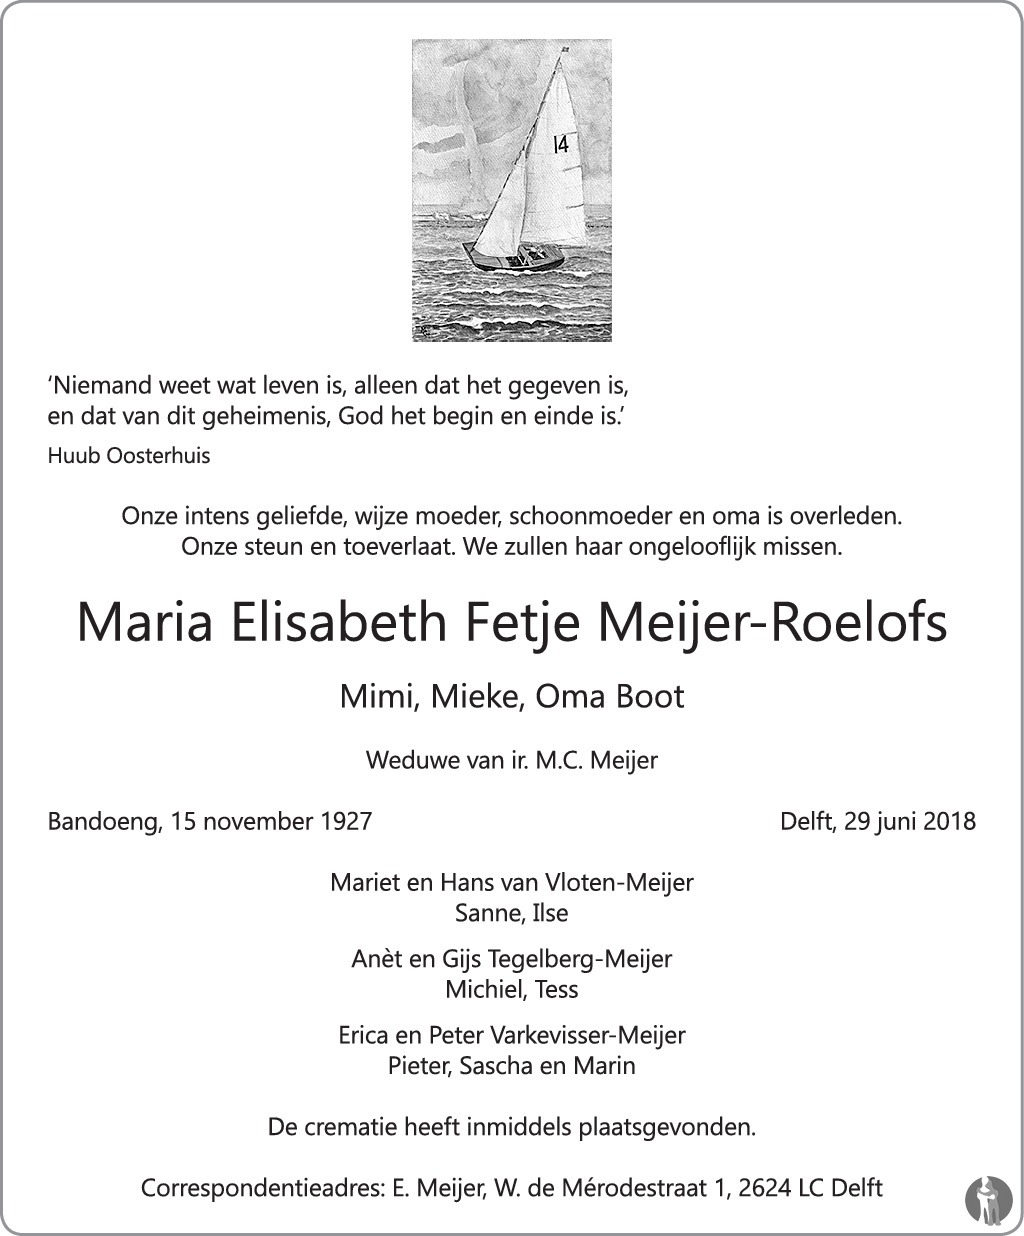 Overlijdensbericht van Maria Elisabeth Fetje Meijer - Roelofs  in Delftse Post